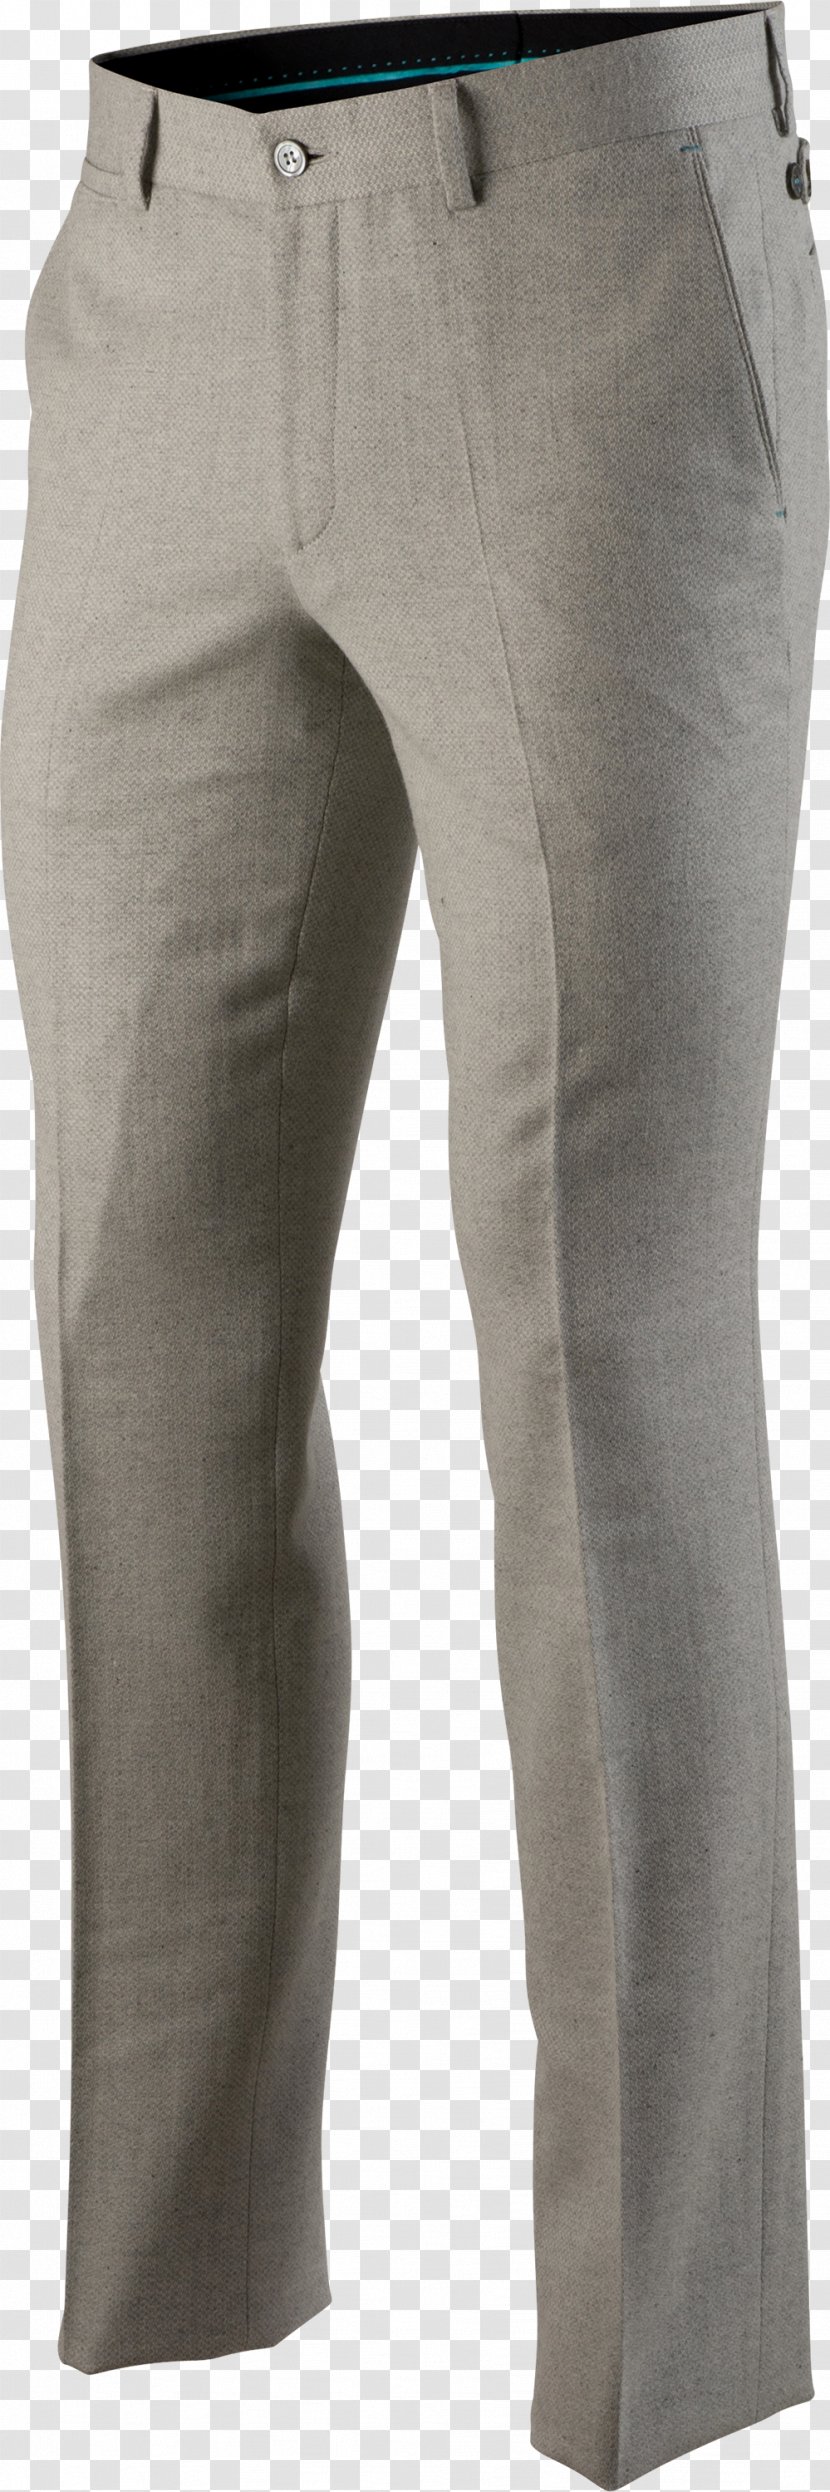 Jeans Denim Pants - Trousers - Polo Transparent PNG